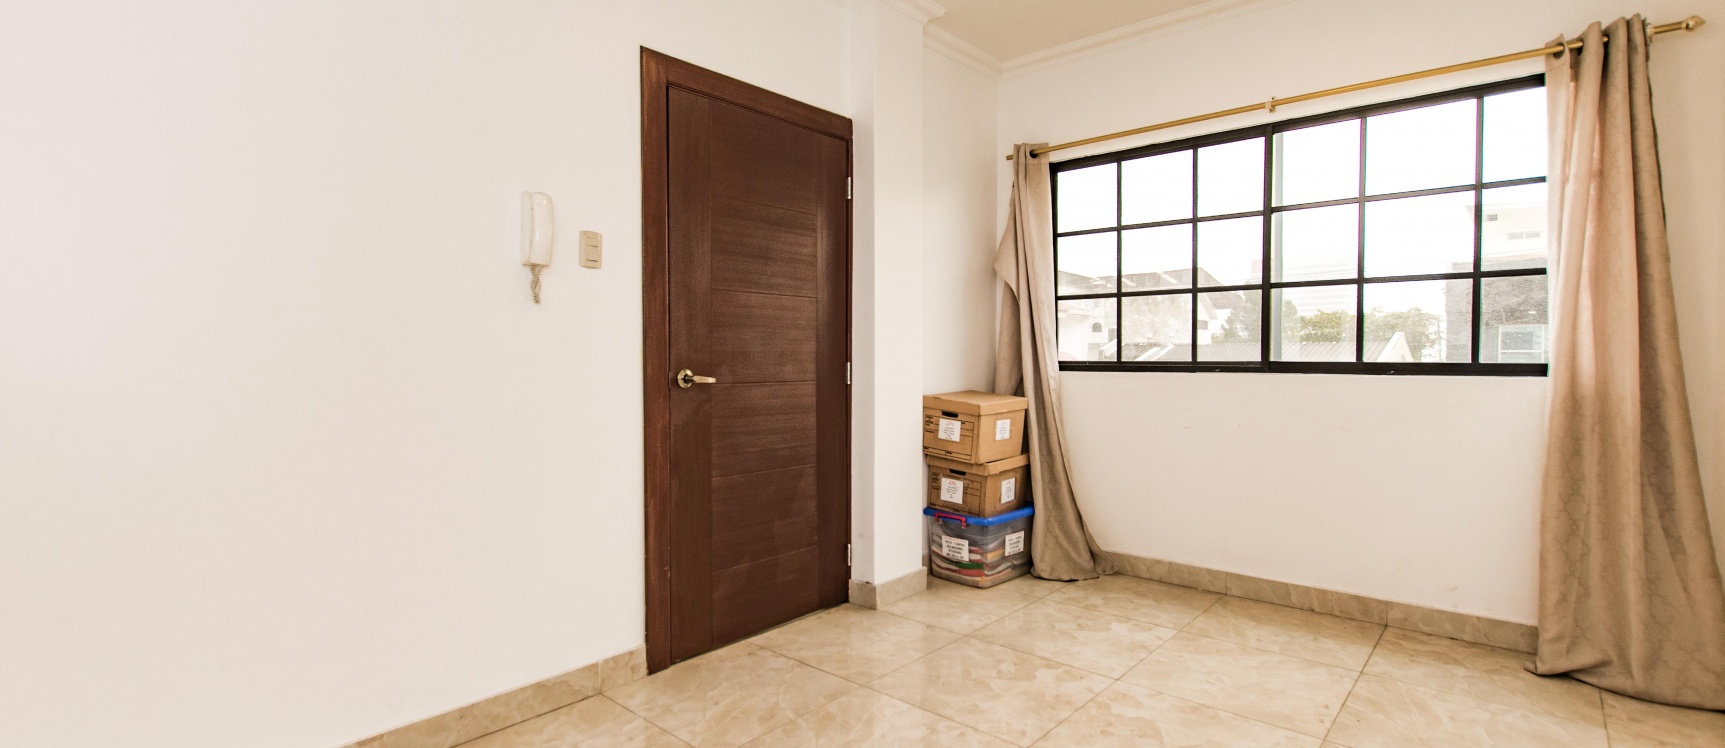 GeoBienes - Suite en alquiler ubicado en Kennedy Norte - Plusvalia Guayaquil Casas de venta y alquiler Inmobiliaria Ecuador